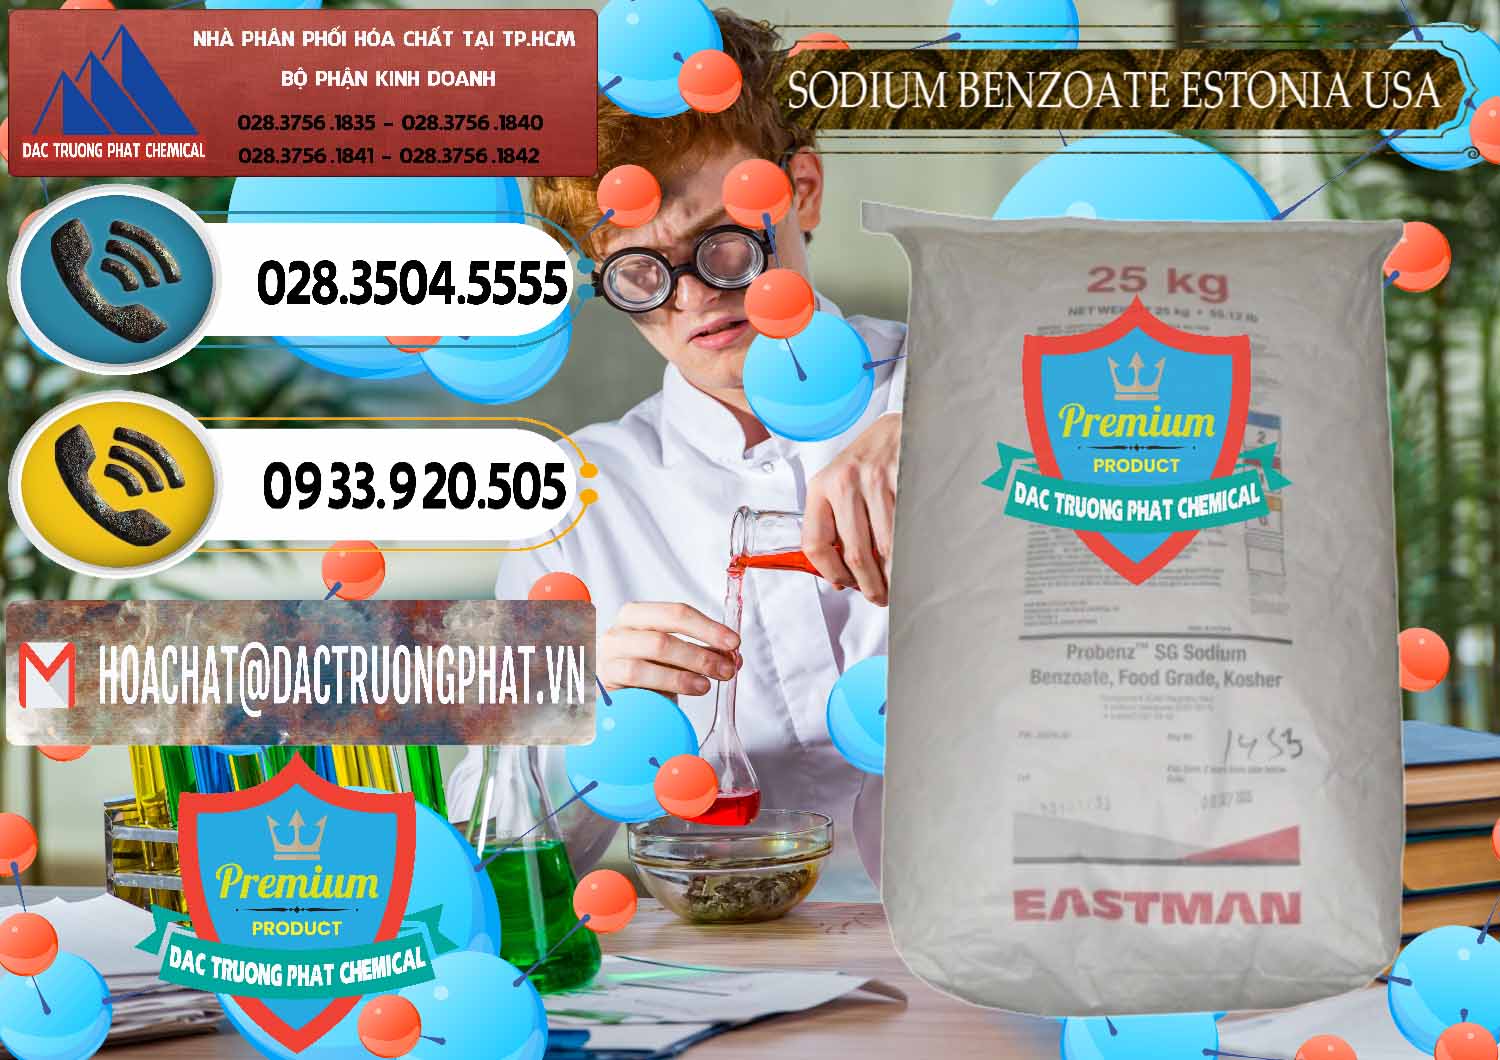 Nơi chuyên bán & phân phối Sodium Benzoate - Mốc Bột Estonia Mỹ USA - 0468 - Nhà cung cấp ( nhập khẩu ) hóa chất tại TP.HCM - hoachatdetnhuom.vn